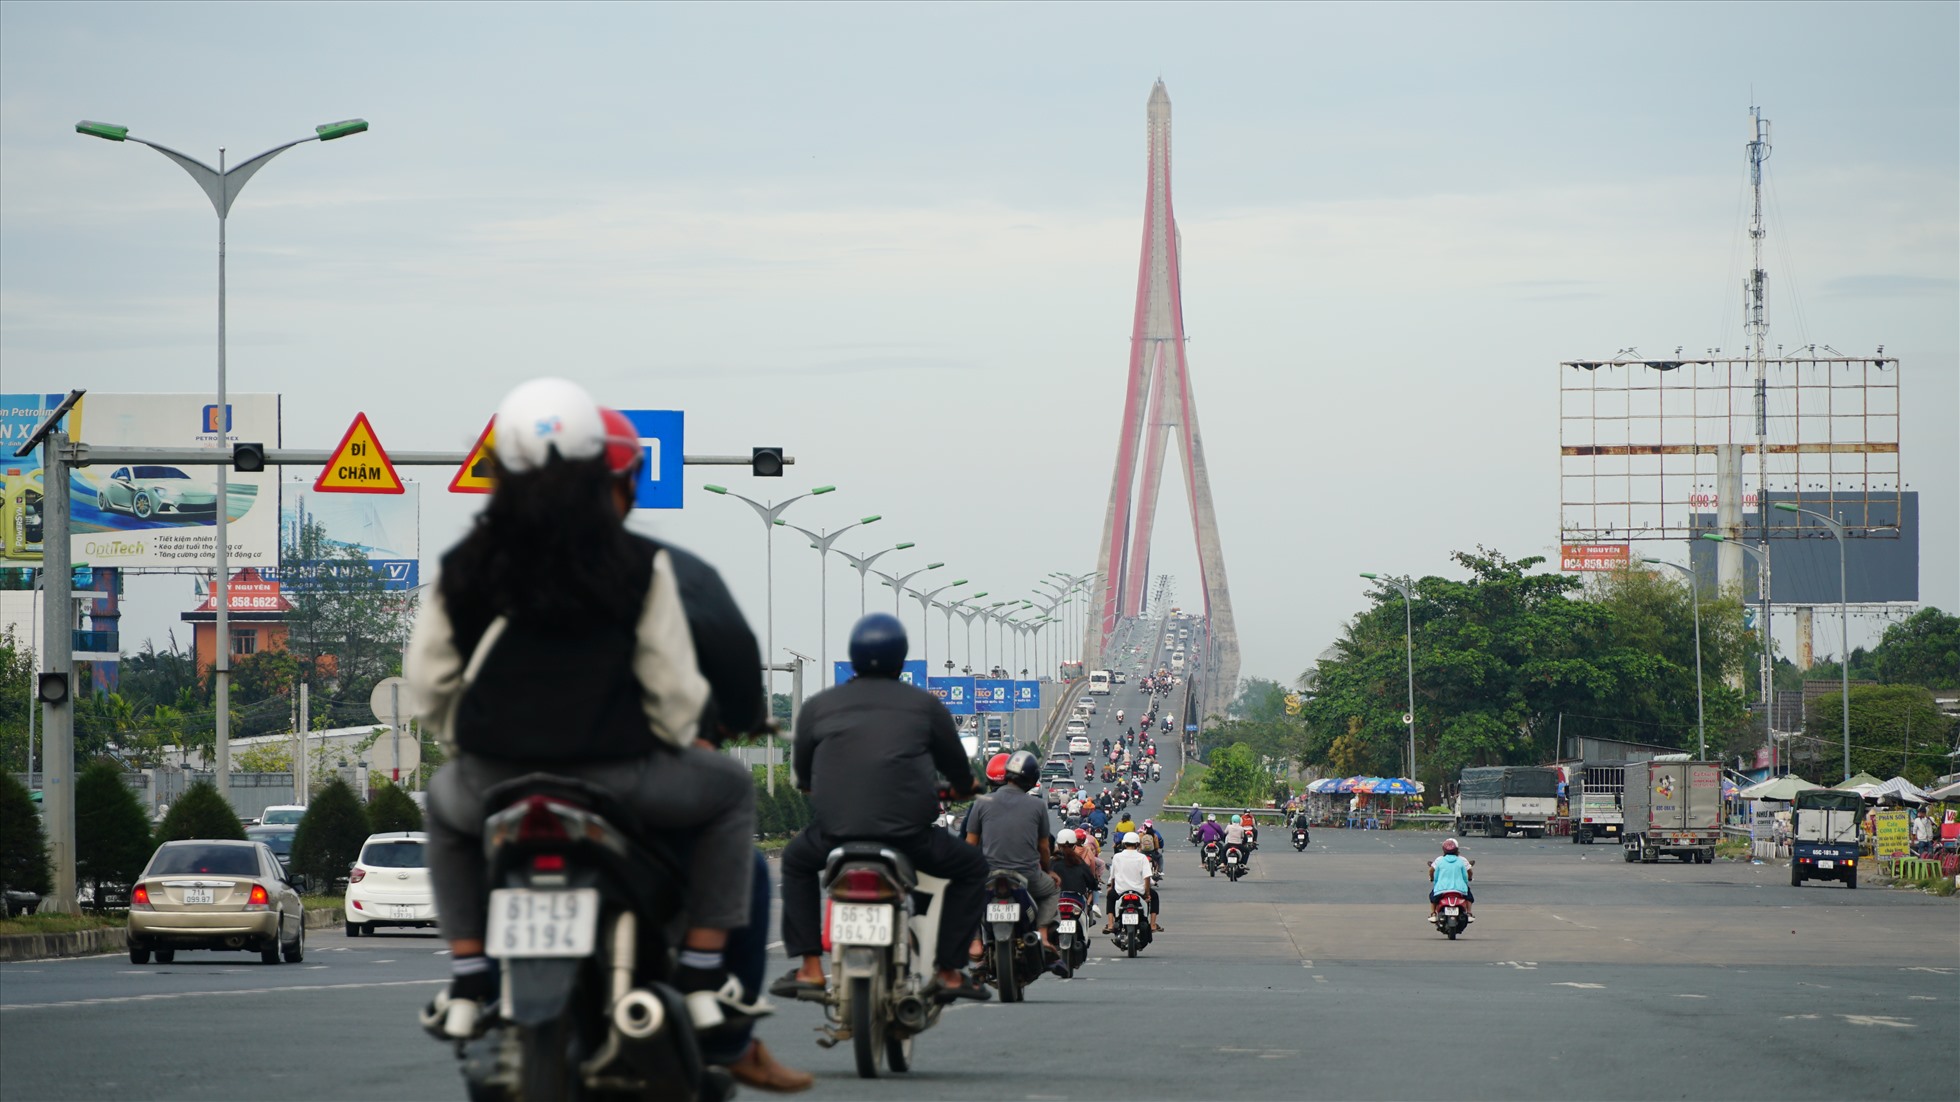 Khoảng 17h, Quốc lộ 1, dòng xe ở các tỉnh trở lại hướng về TP. Hồ Chí Minh để làm việc khá đông đúc.